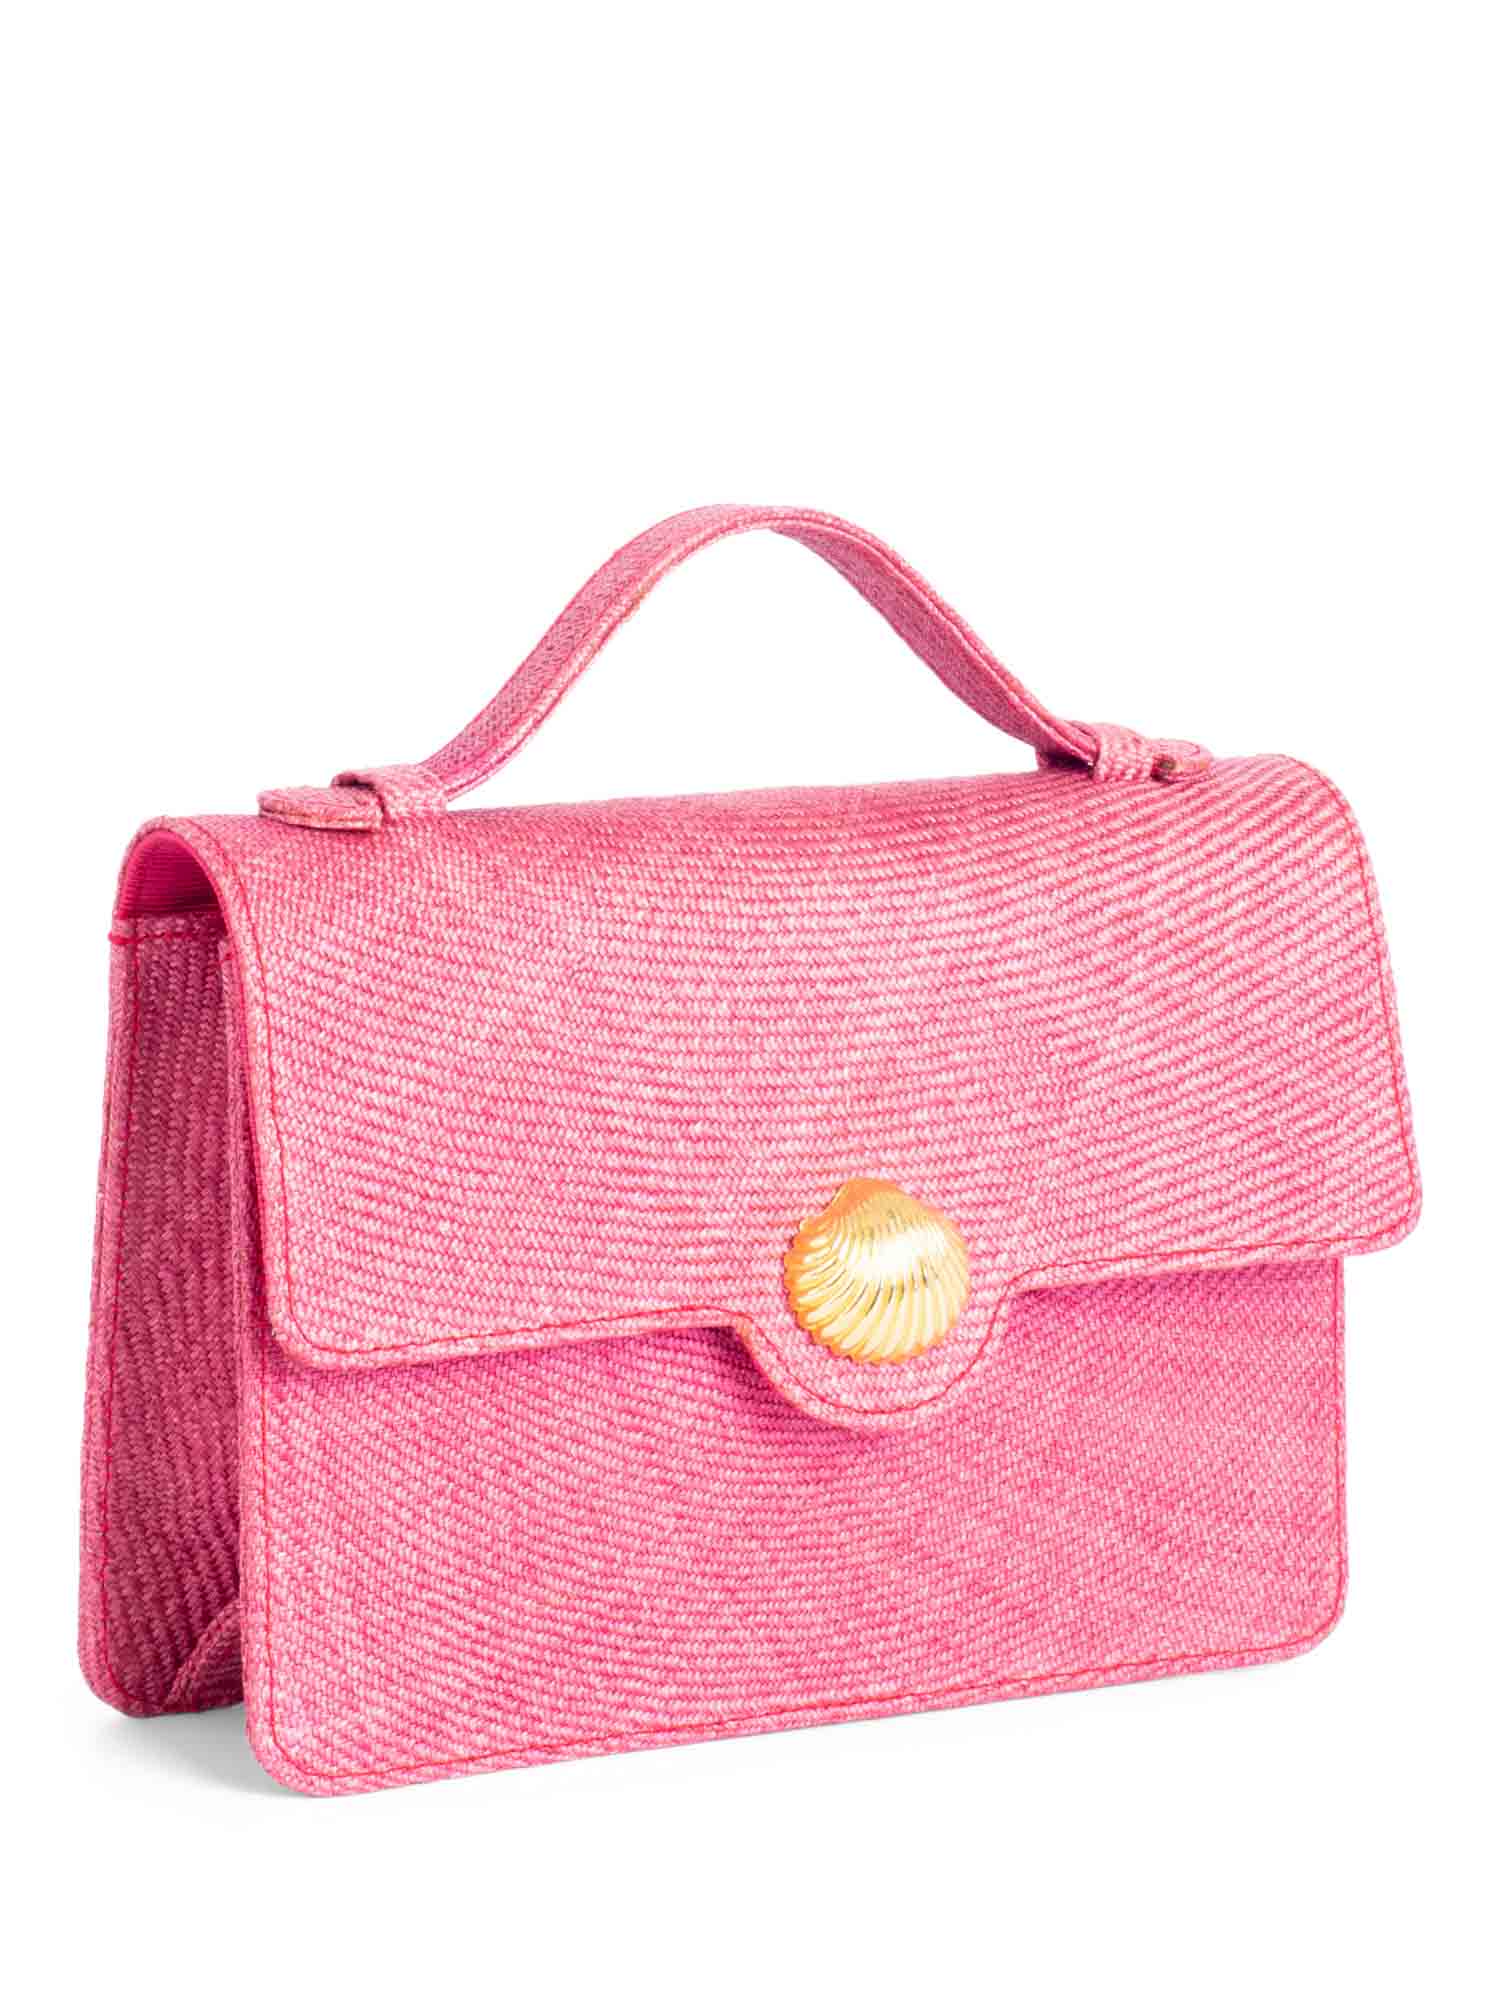 Givenchy Vintage Raffia Top Handle Flap Bag Pink